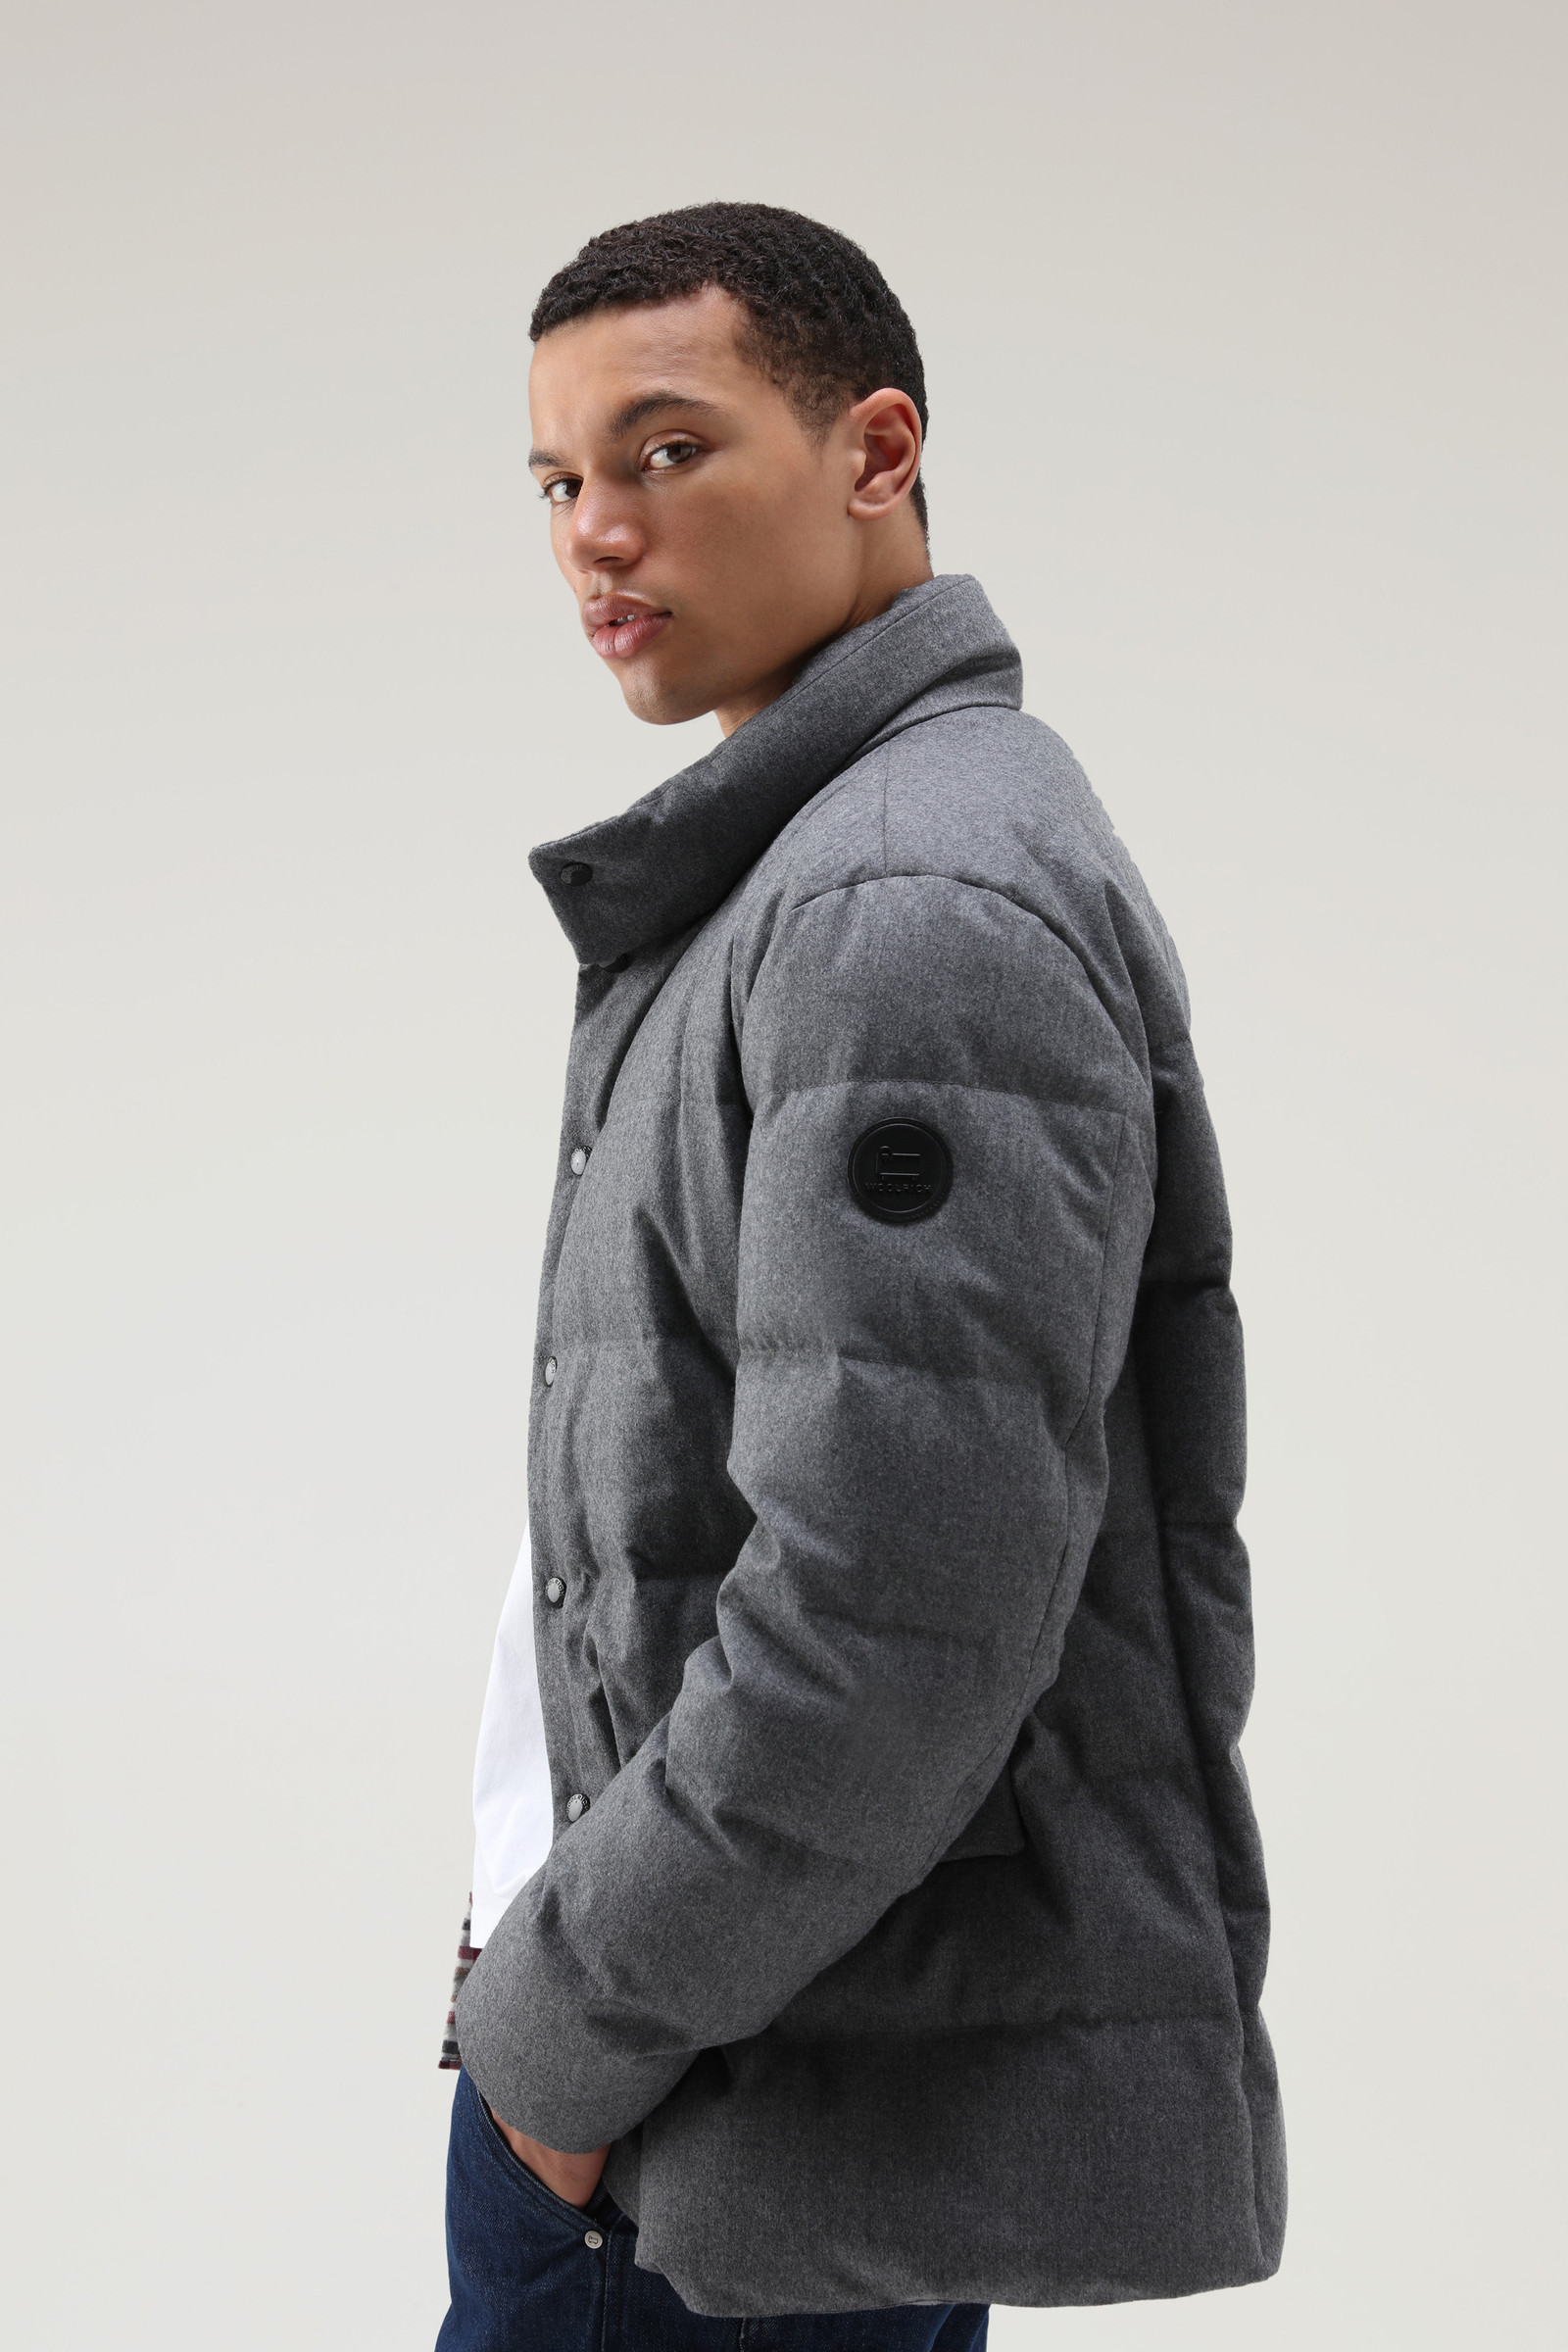 Luxe Blazer in Vitale Barberis Canonico Wool Grey | Woolrich USA